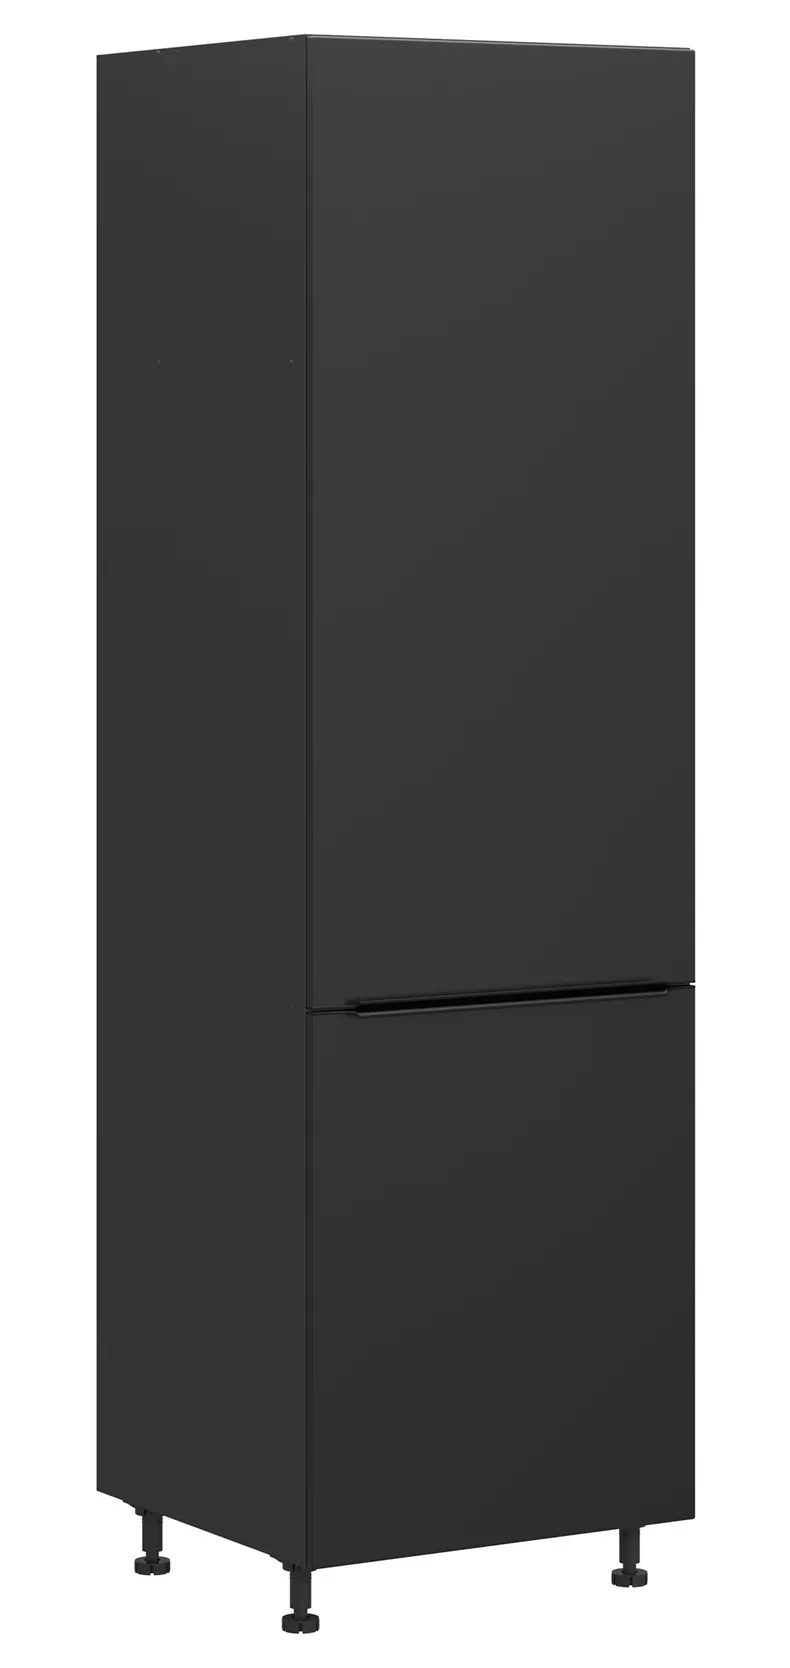 BRW Левый кухонный шкаф Sole L6 высотой 60 см черный матовый, черный/черный матовый FM_D_60/207_L/L-CA/CAM фото №2